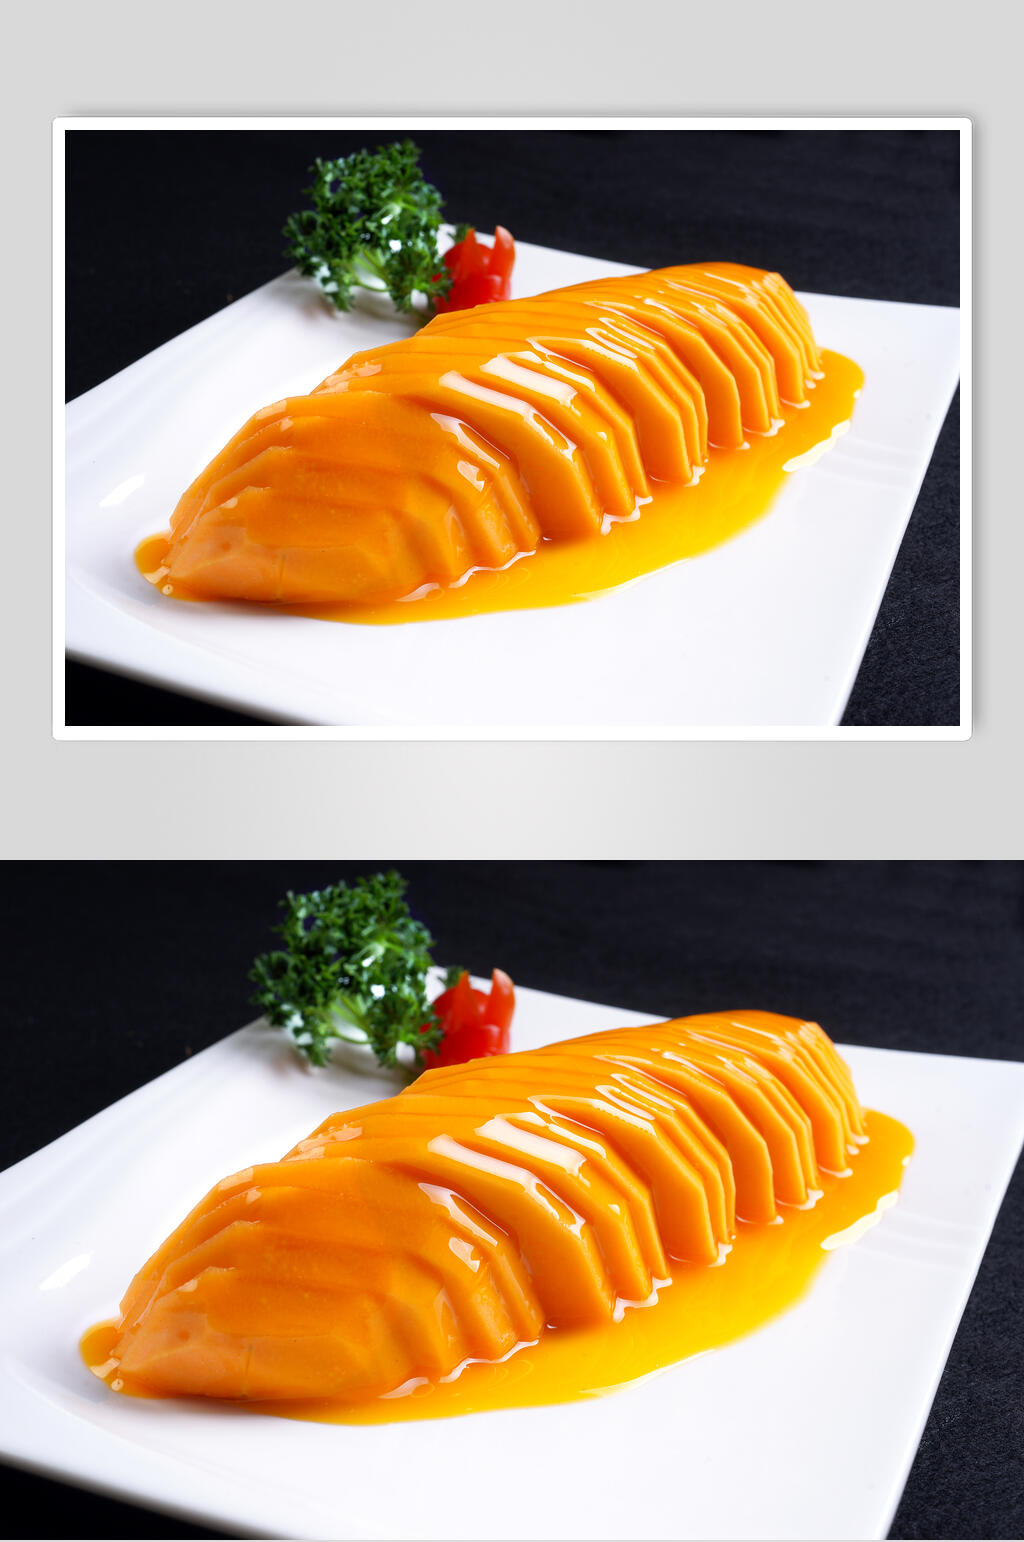 橙香木瓜食品摄影图片素材